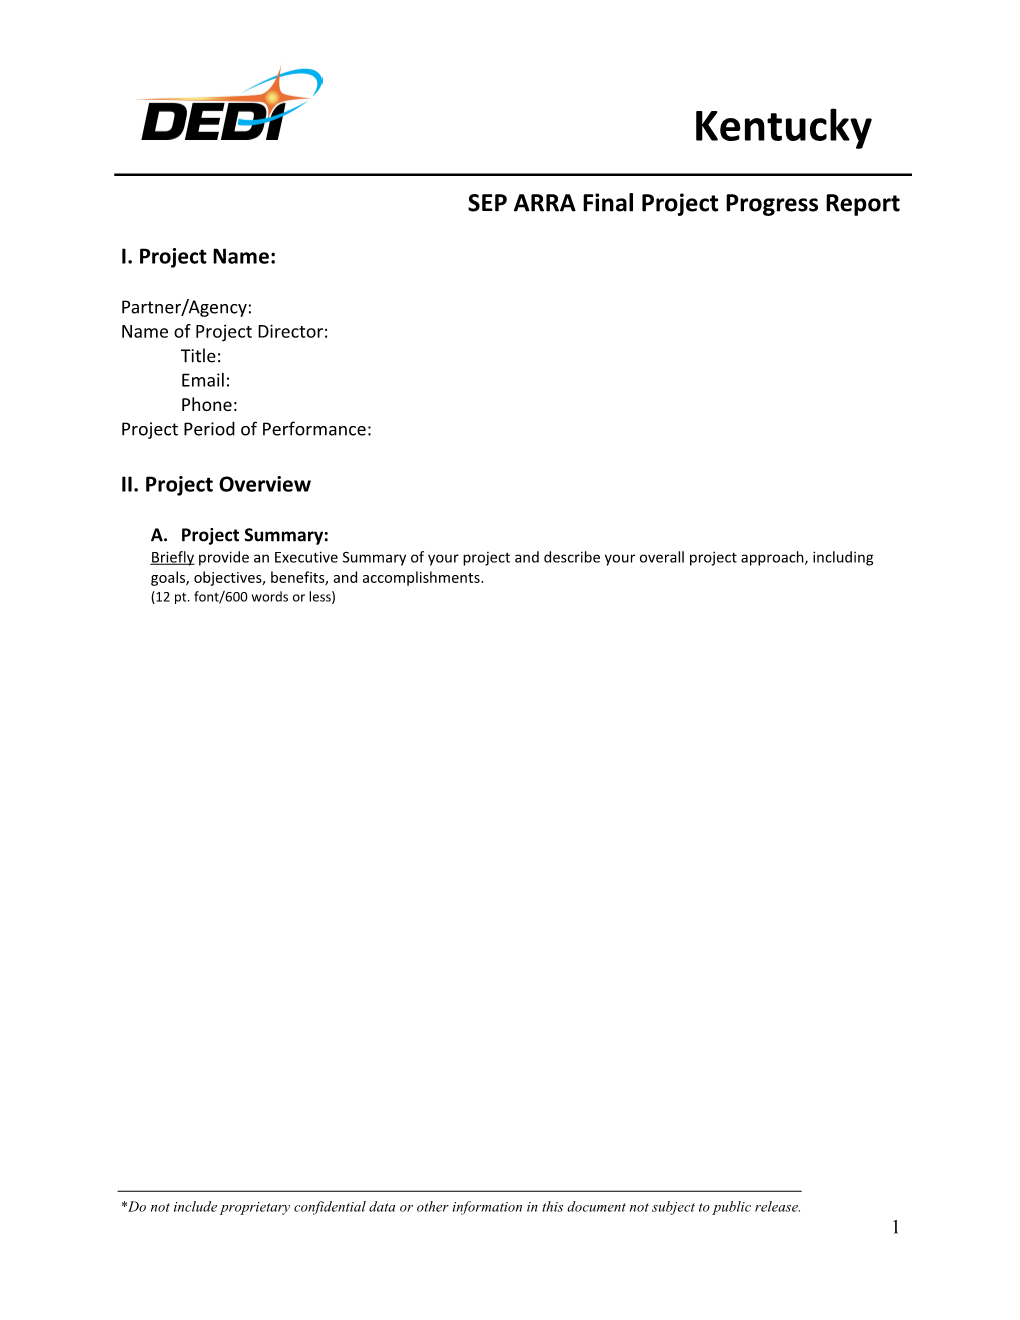 SEP ARRA Final Project Progress Report